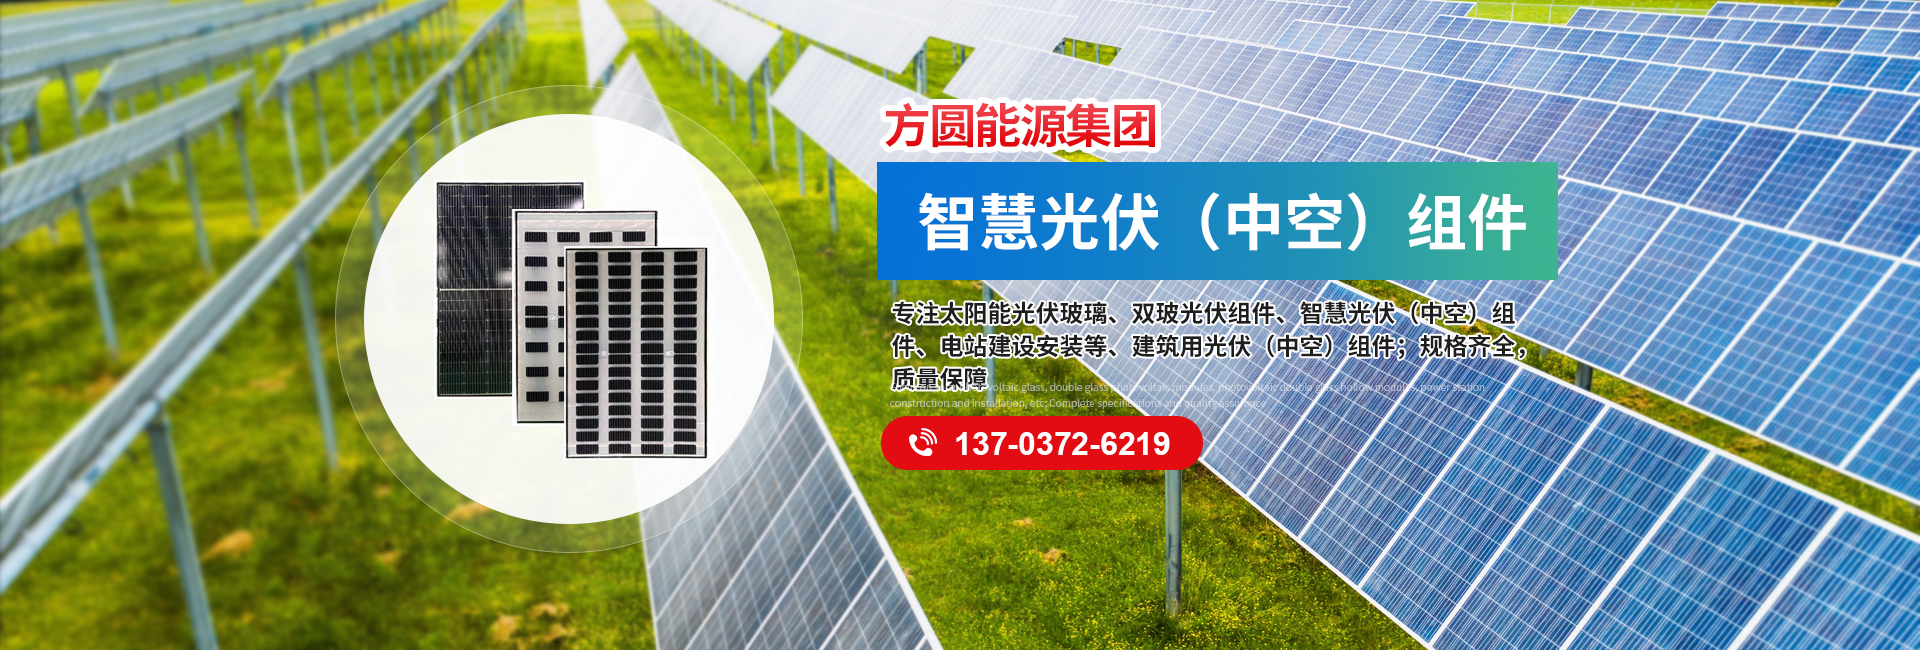 安阳方圆能源集团有限公司